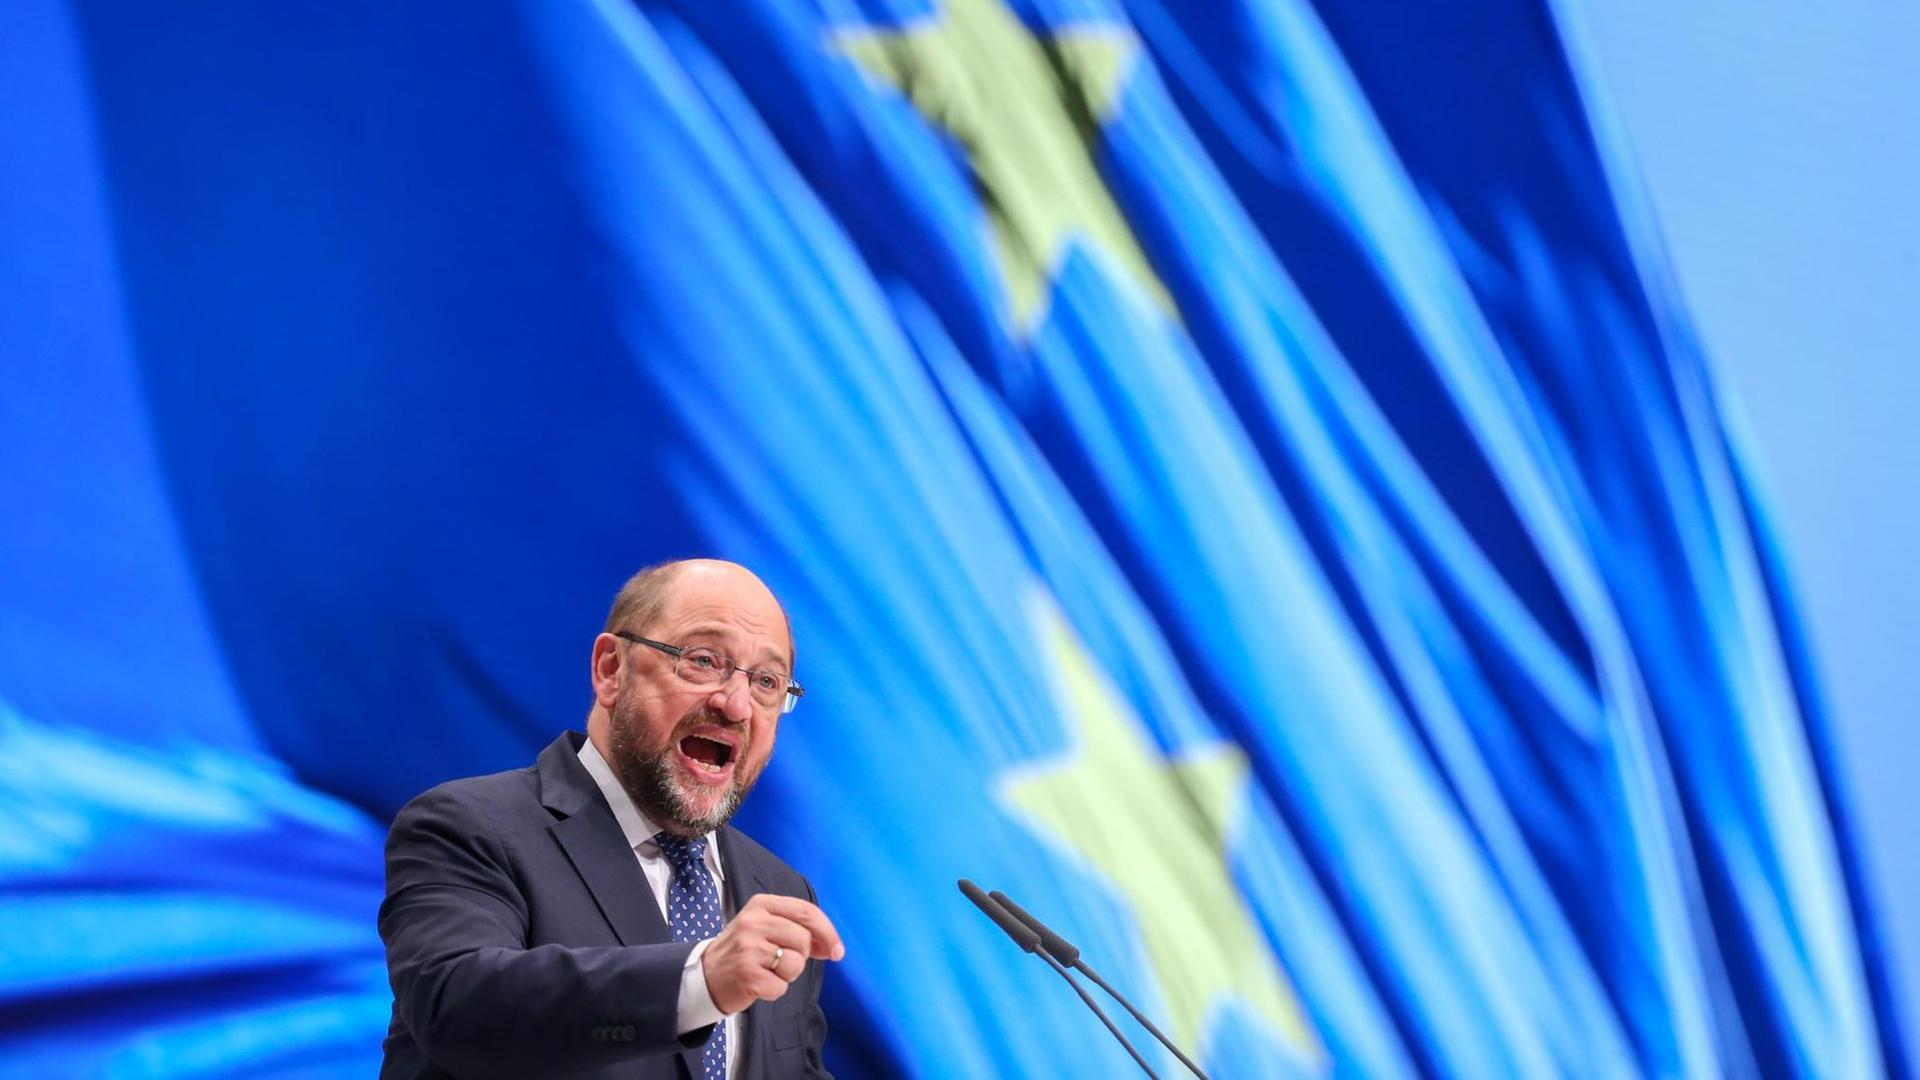 EU-Parlamentspräsident Martin Schulz spricht beim Bundesparteitag der Sozialdemokratischen Partei Deutschlands in Berlin zu den Delegierten.